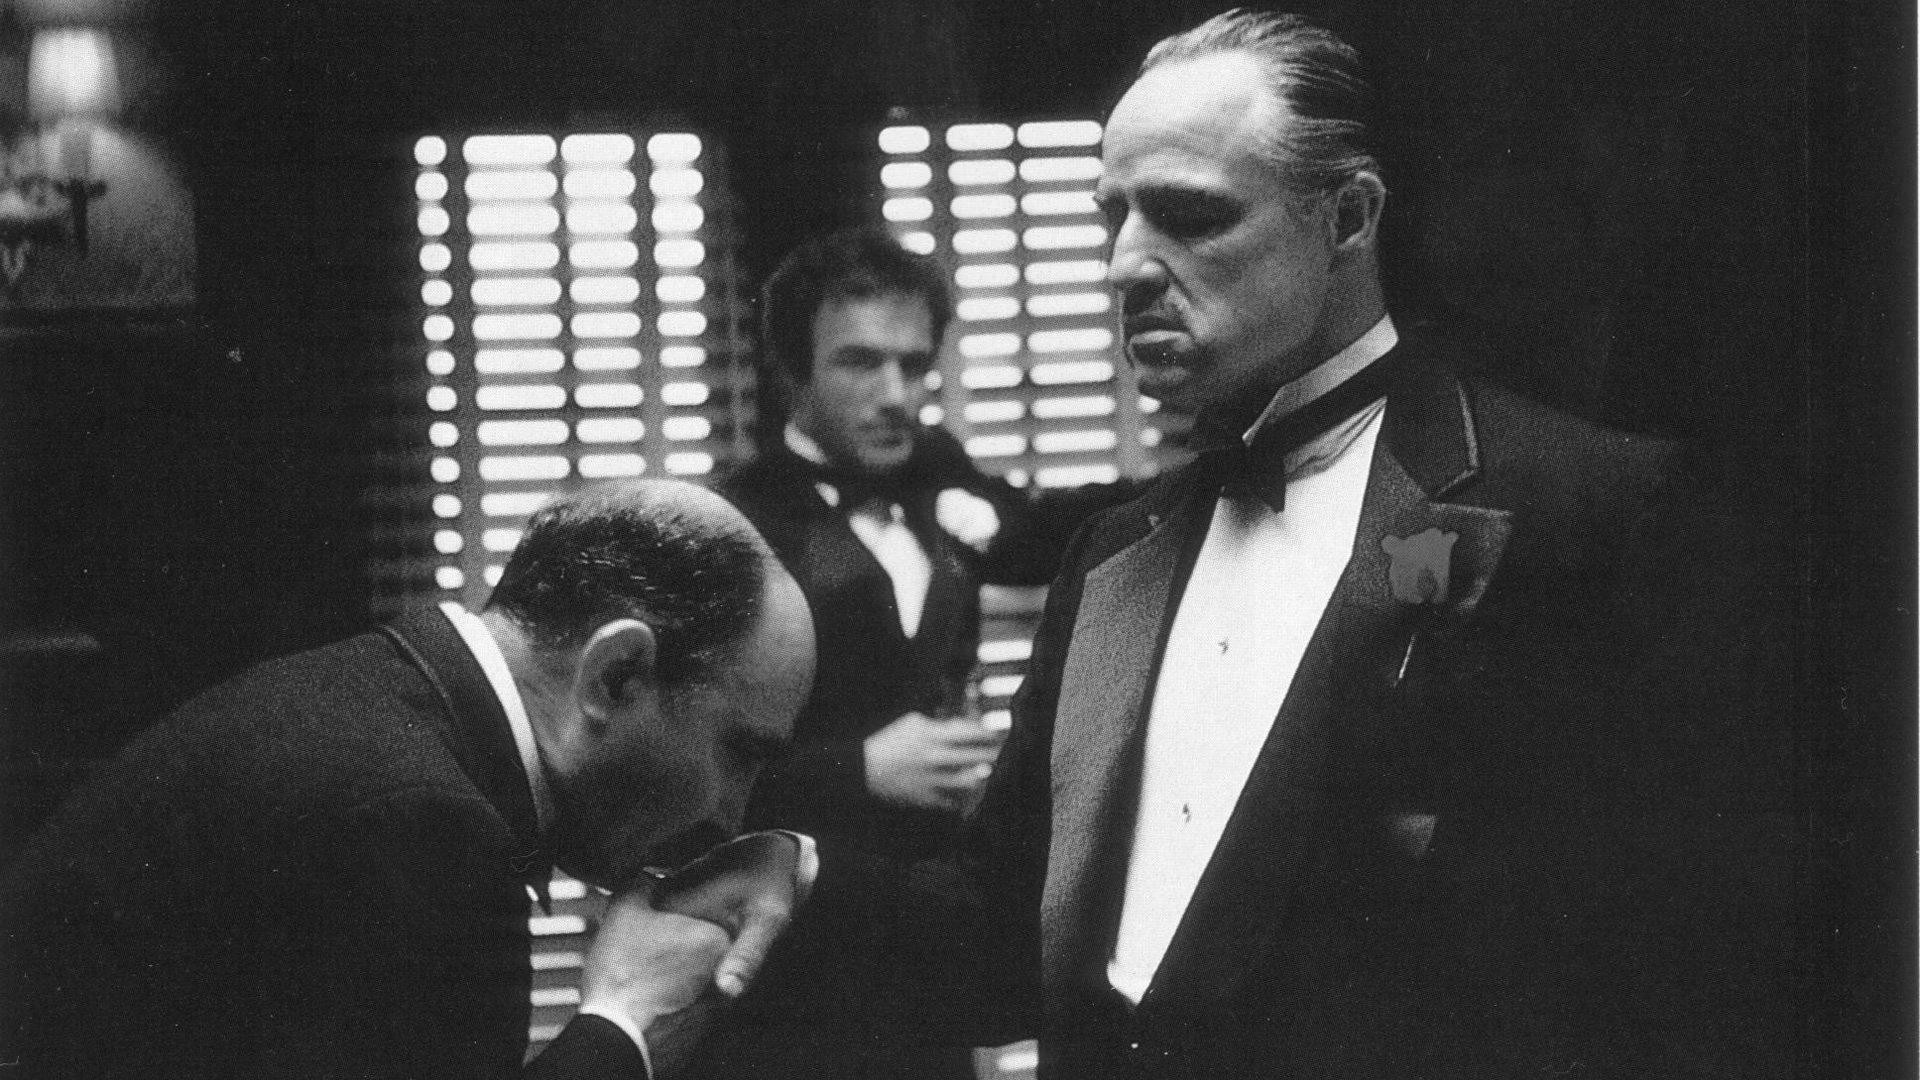 People 1920x1080 The Godfather monochrome film stills Marlon Brando Mafia movies Vito Corleone gangster men